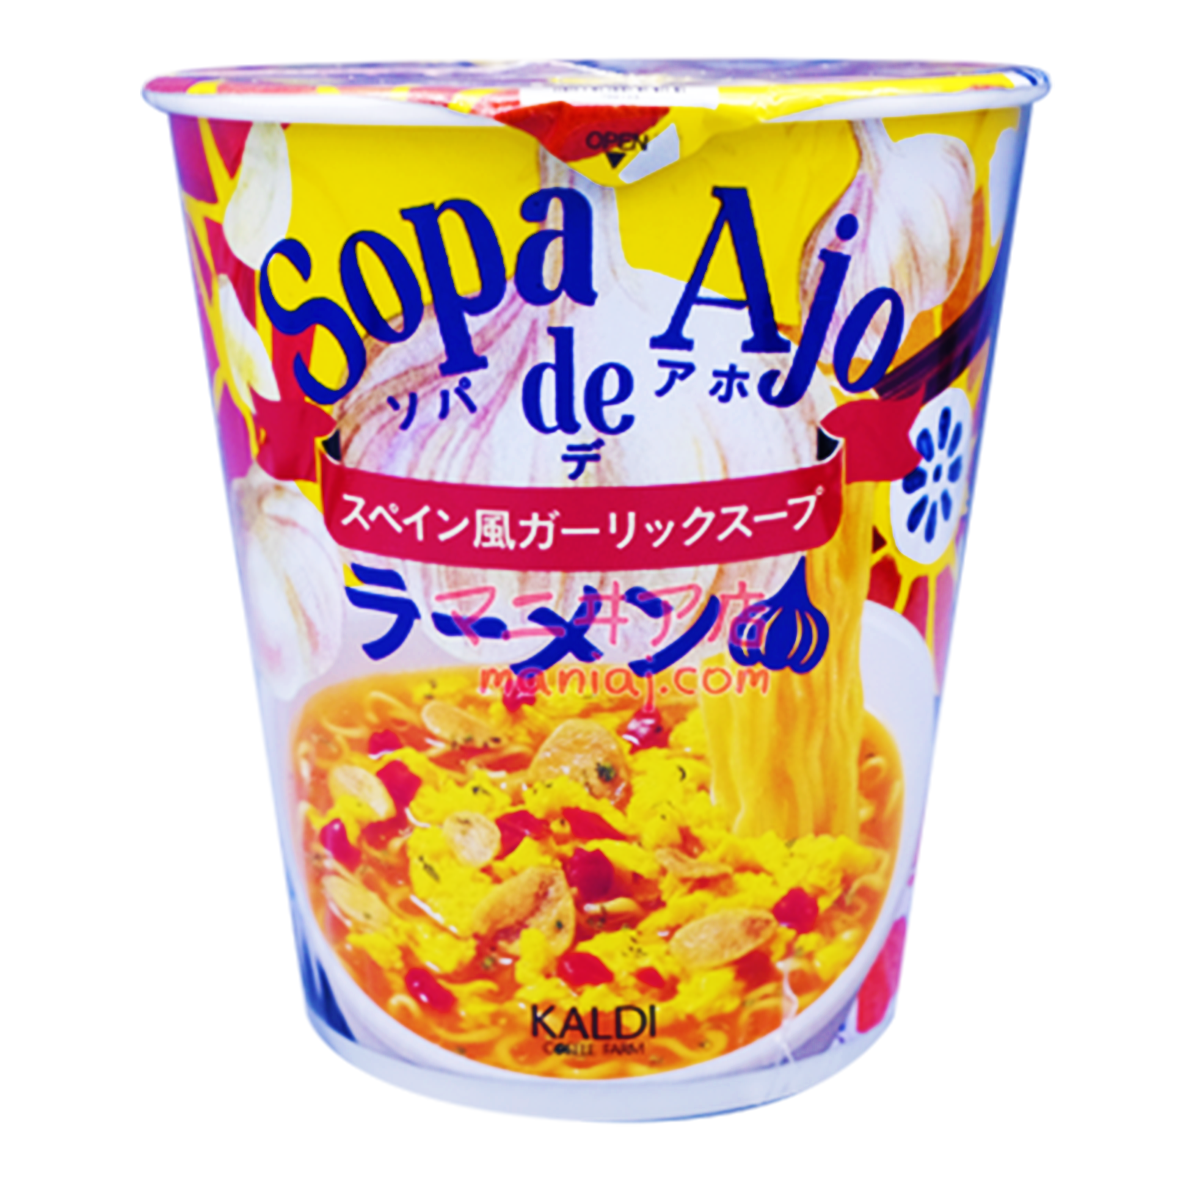 Sopa de Aji 西班牙風大蒜拉麵